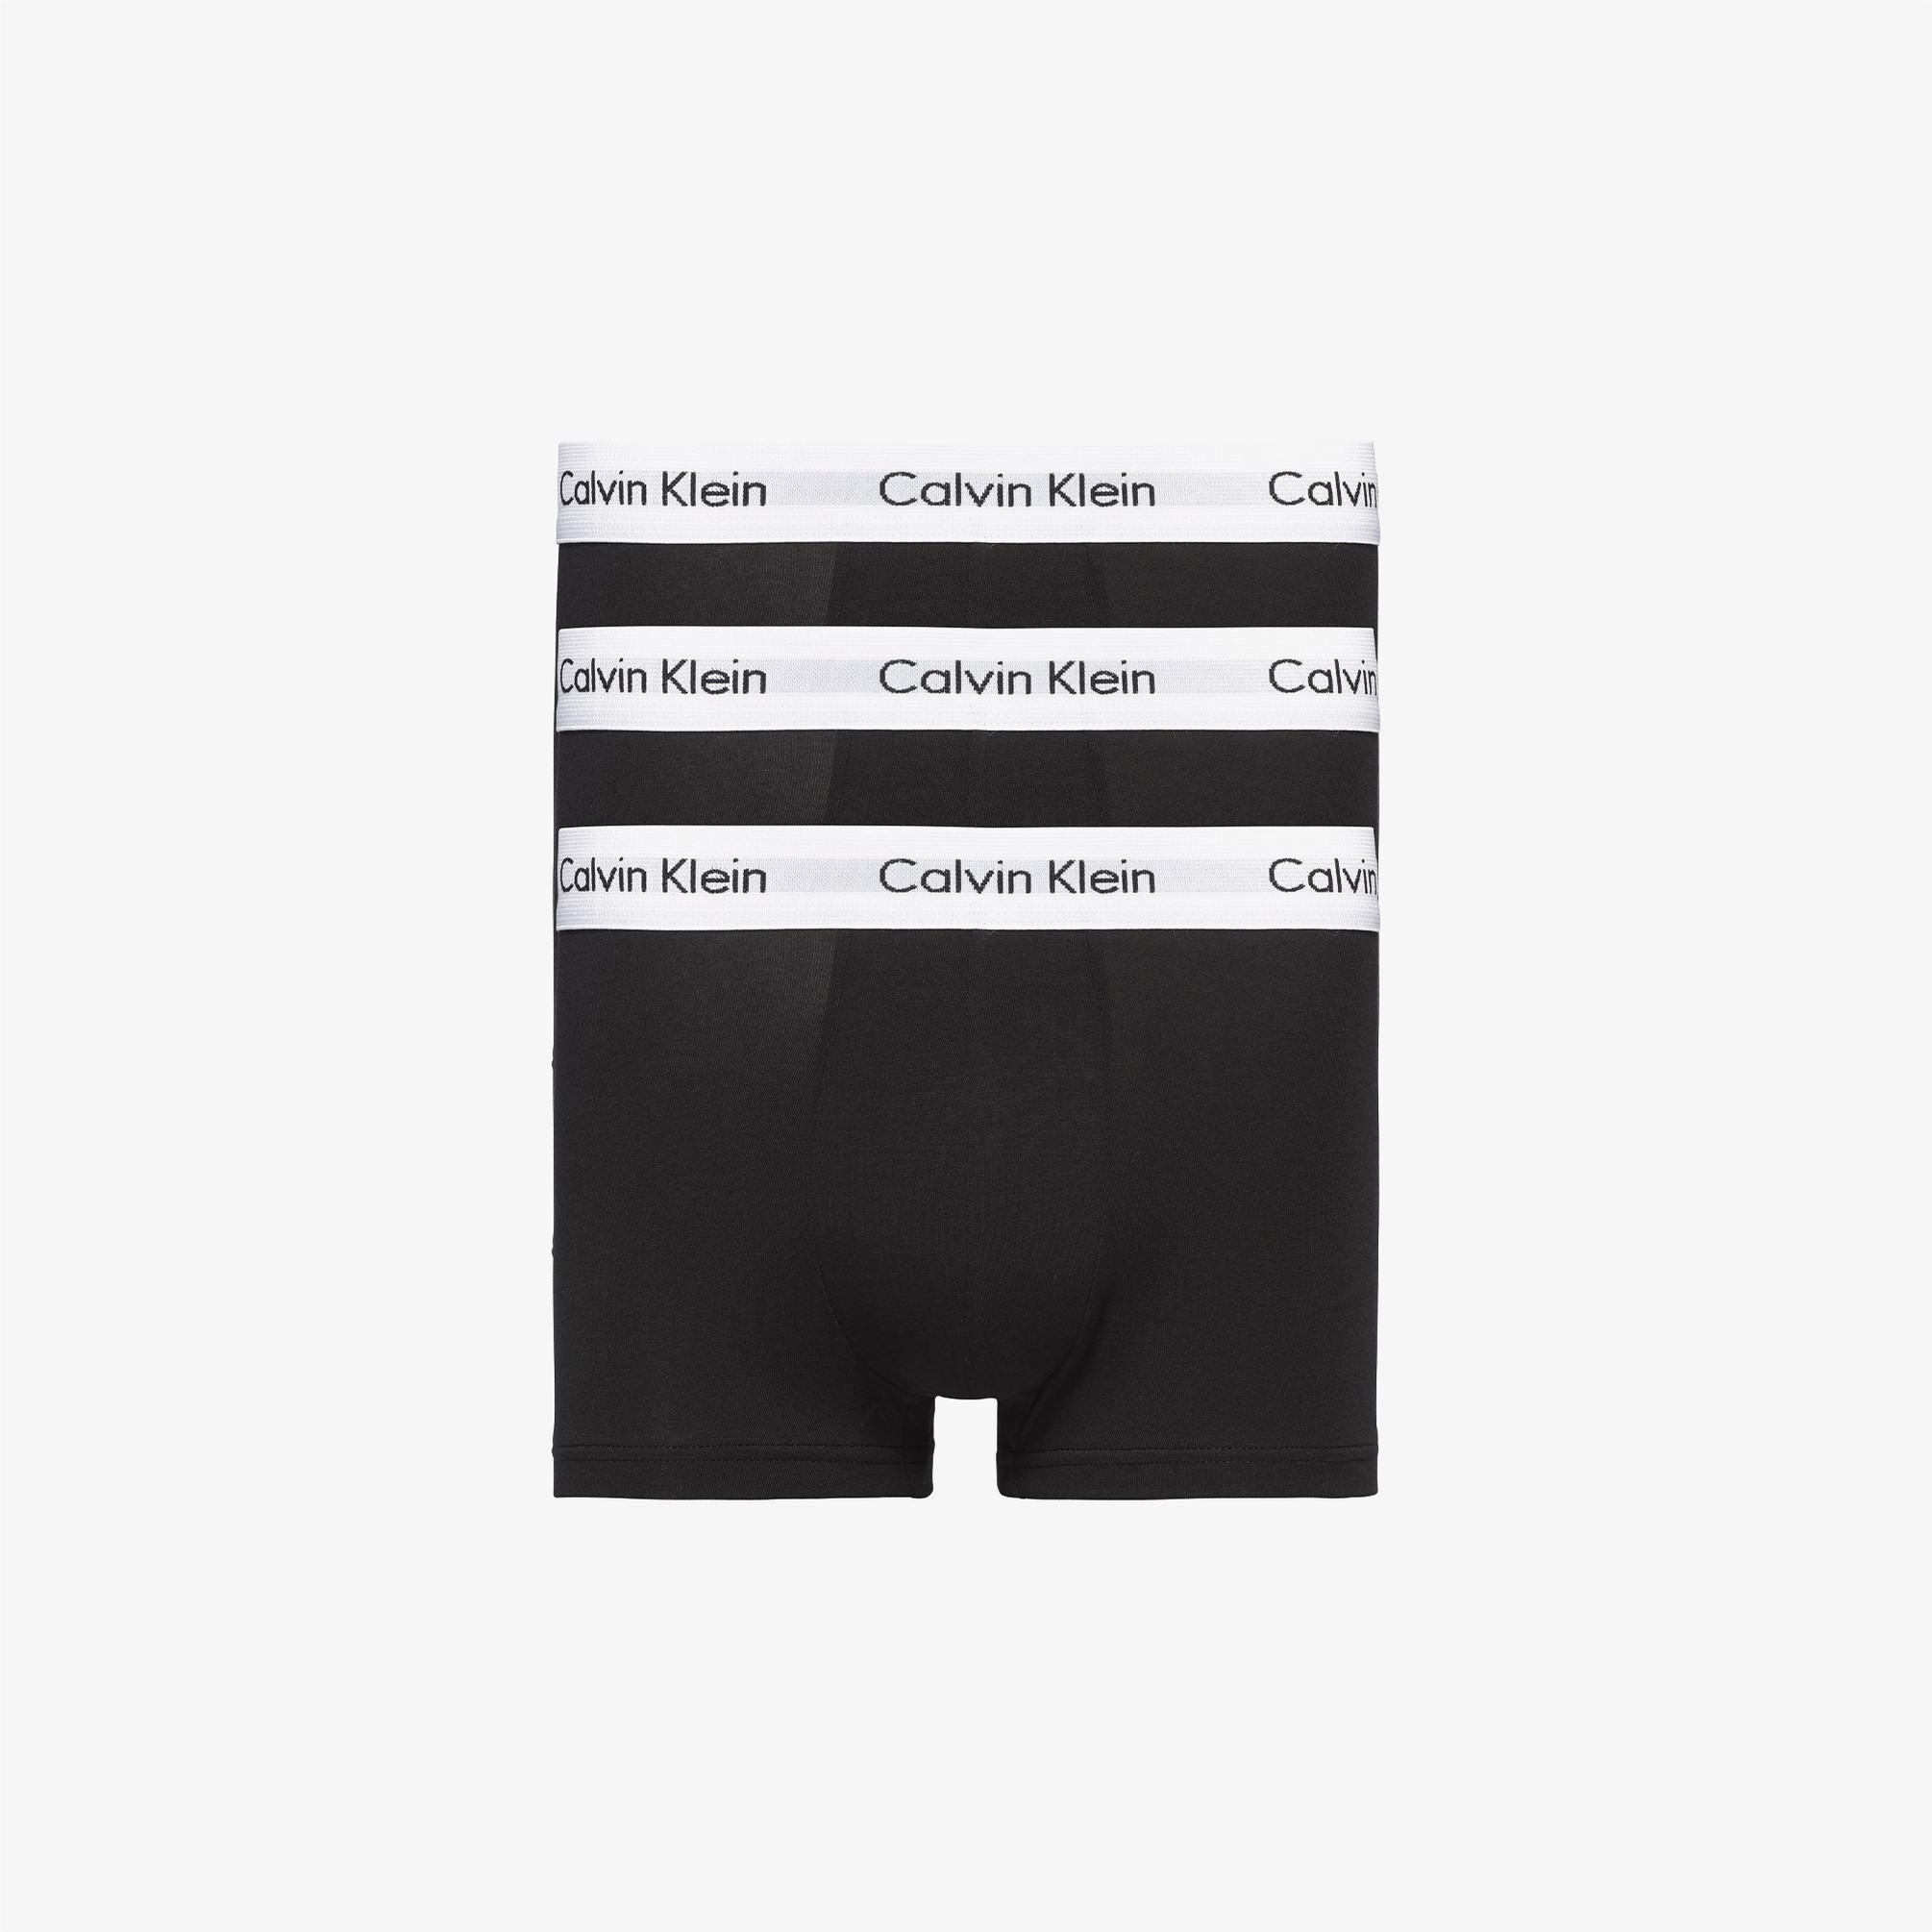  Calvin Klein 3'lü Low Rise Trunks Taille Basse Pack Erkek Siyah Boxer